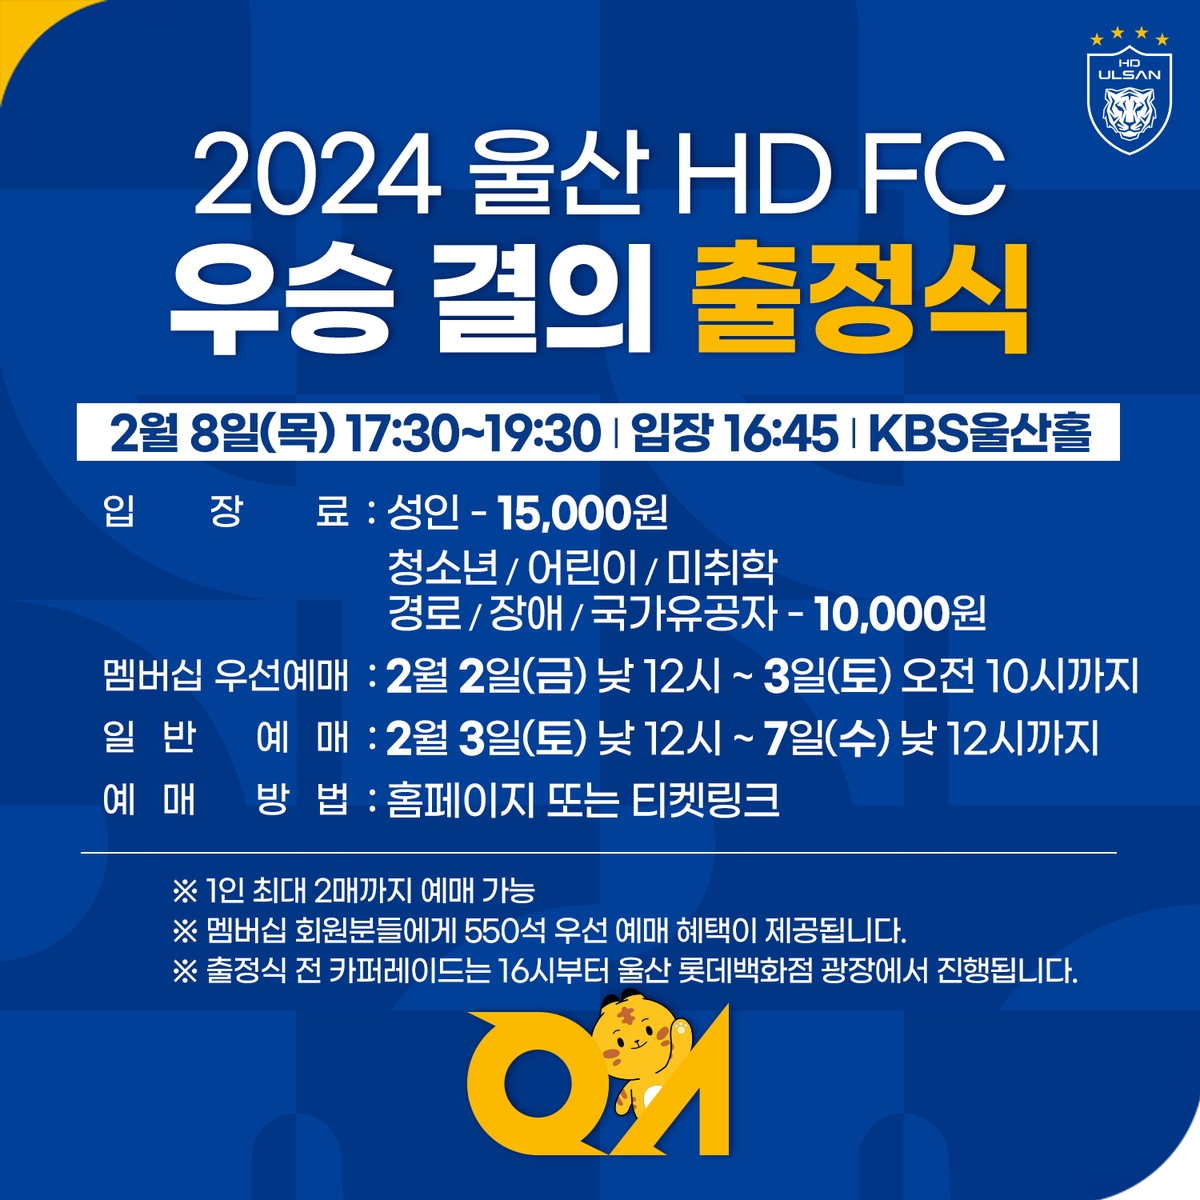 K리그1 챔피언 울산, 8일 카퍼레이드로 2024시즌 출정식